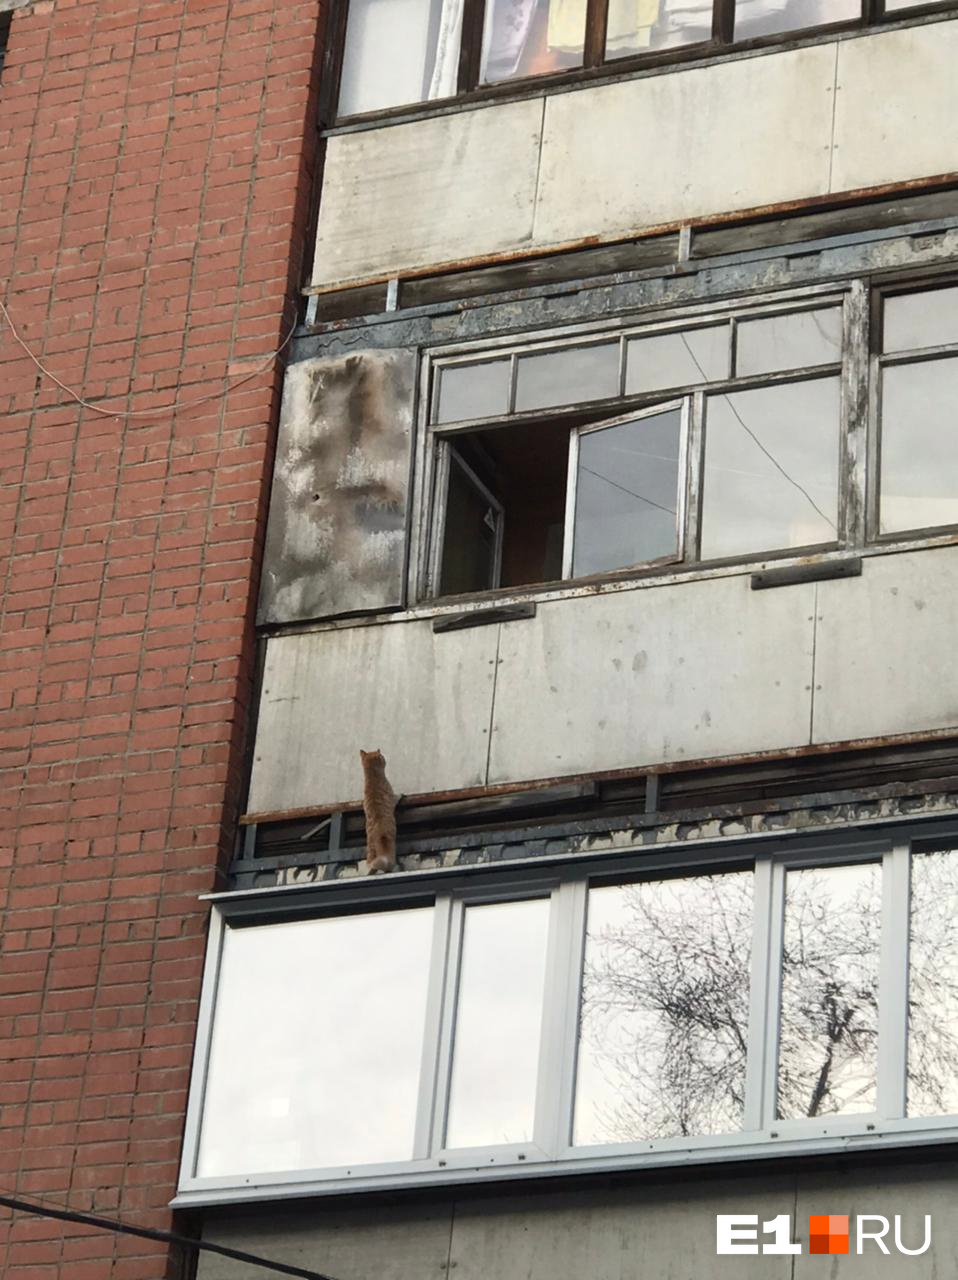 В Екатеринбурге бабушка чуть не разбилась, когда спасала кошку с третьего этажа: видео